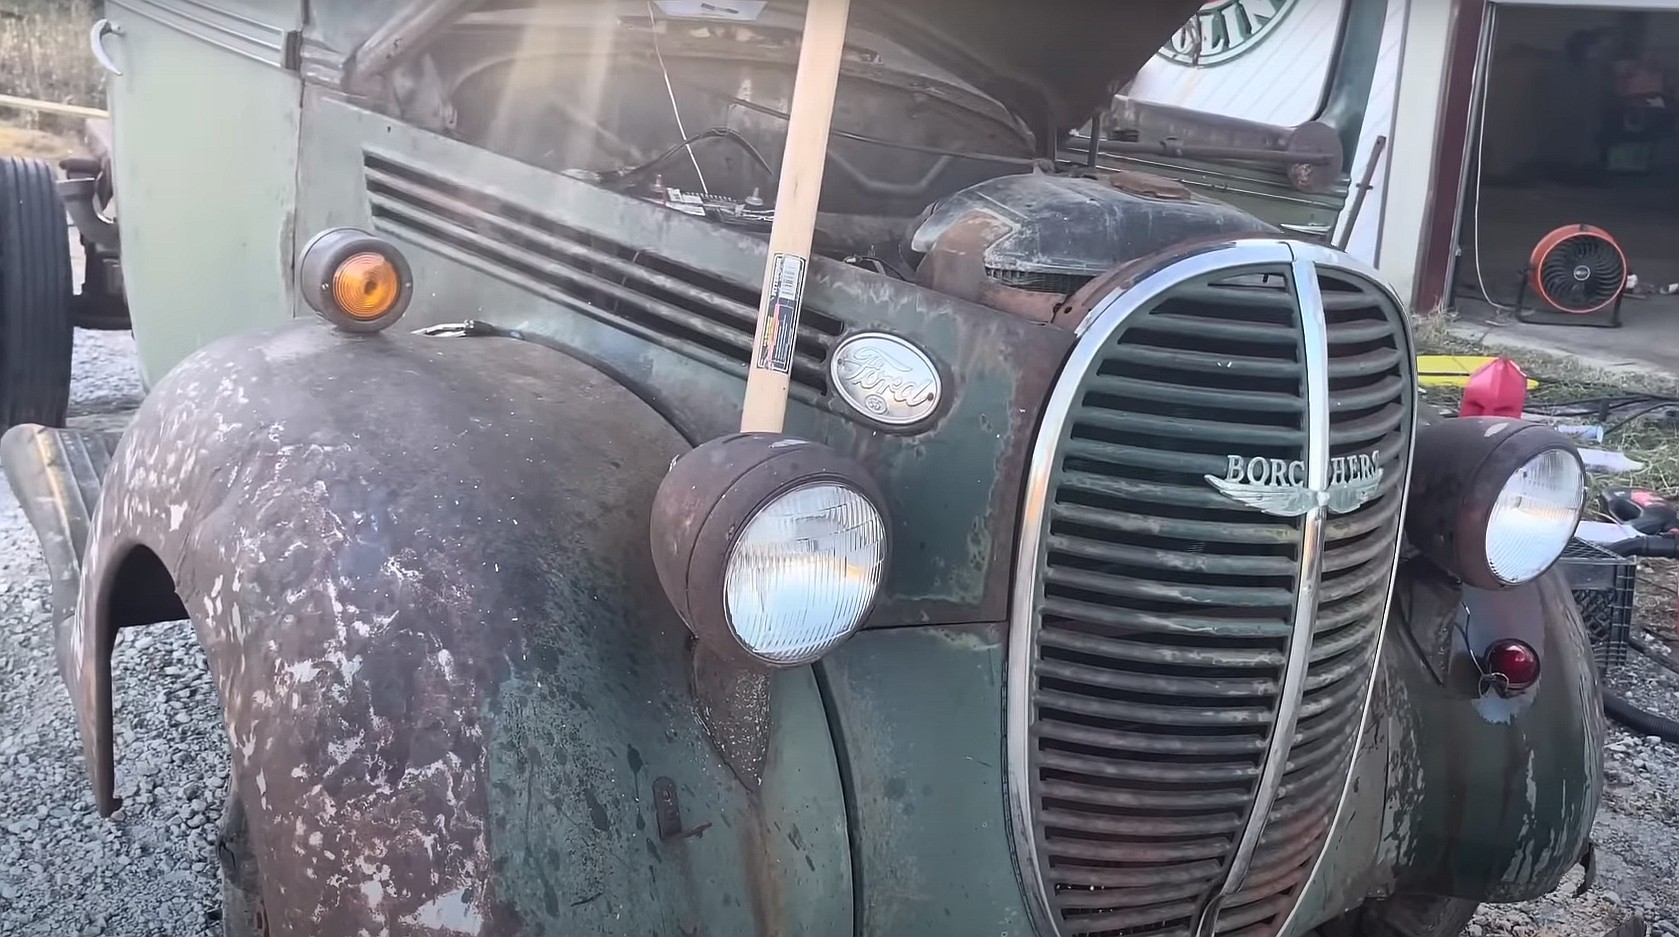 Грузовик Ford 1939 года, заброшенный на 65 лет, спасен, мотор Flathead V8 согласился ехать